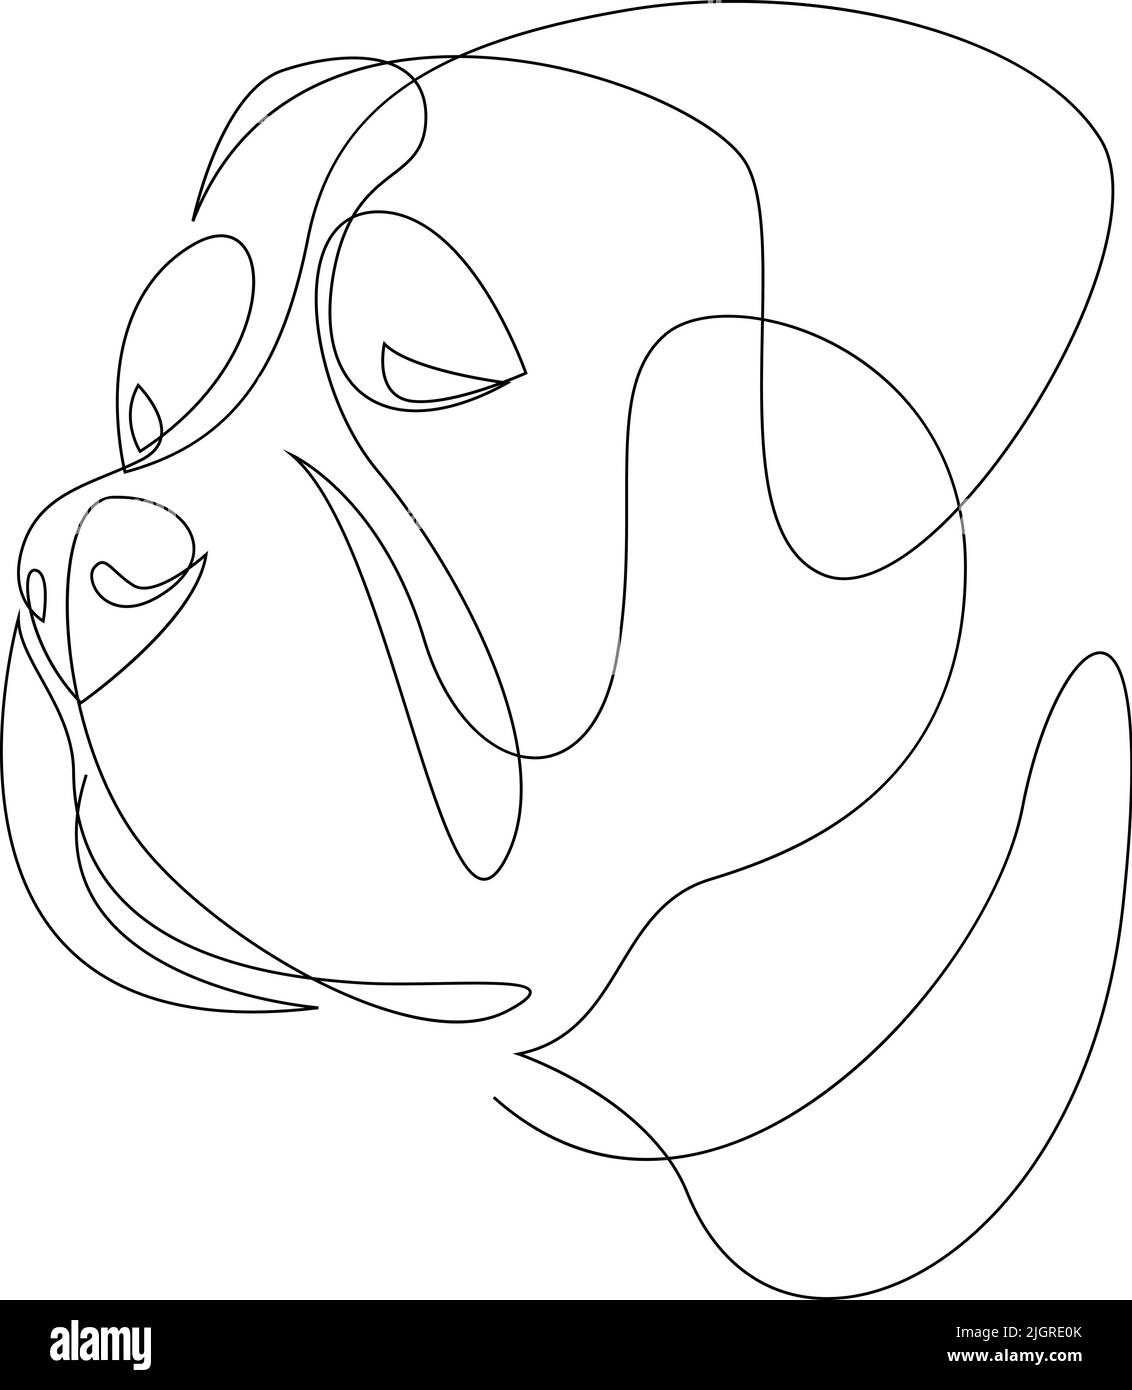 Ligne continue Bullmastiff. Illustration d'un vecteur Pitbull de style minimaliste à une seule ligne. Portrait. Illustration de Vecteur